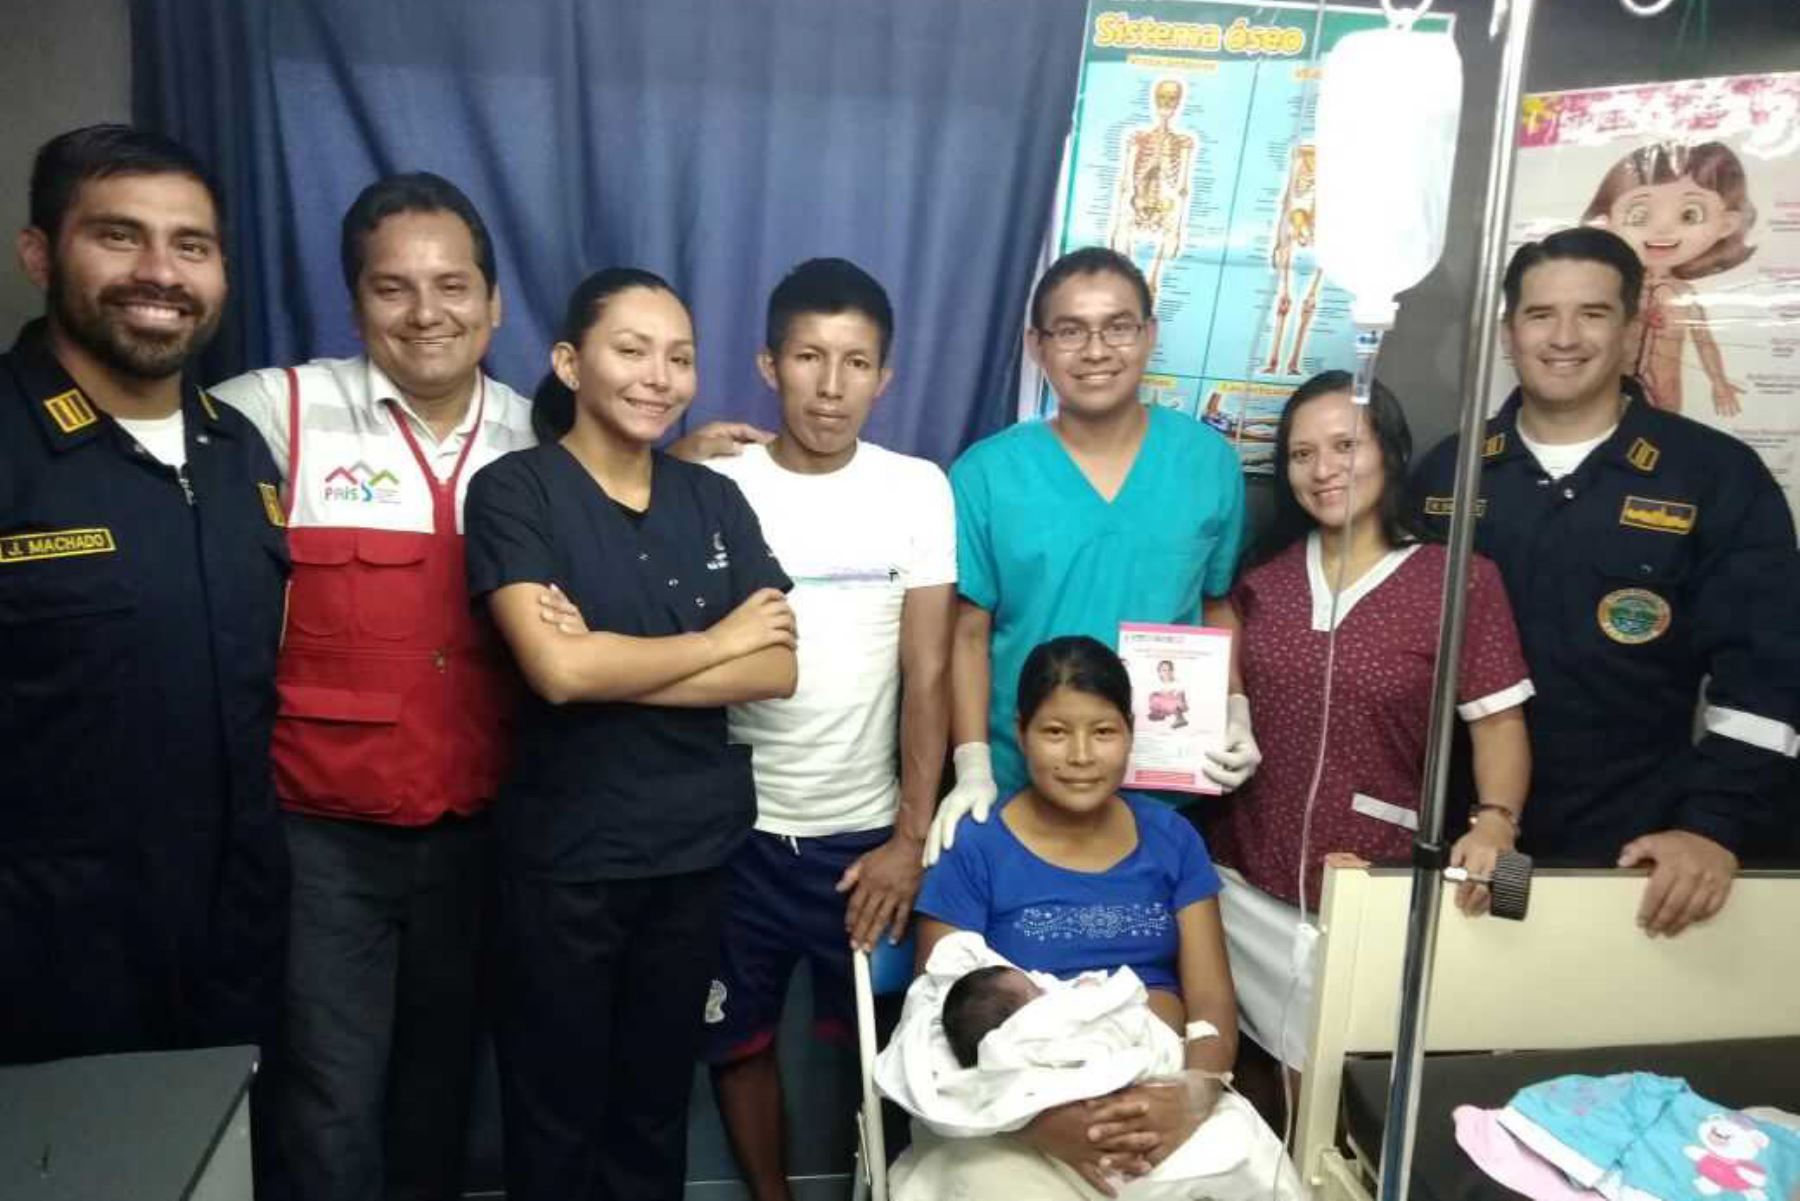 La tripulación de la PIAS Napo dio la bienvenida hoy a la primera bebé que nació a bordo de esta plataforma móvil que recorría la comunidad nativa Súmac Allpa, en el distrito de Napo, provincia de Maynas, región Loreto, como parte de su primera Campaña de Acción Social 2018.